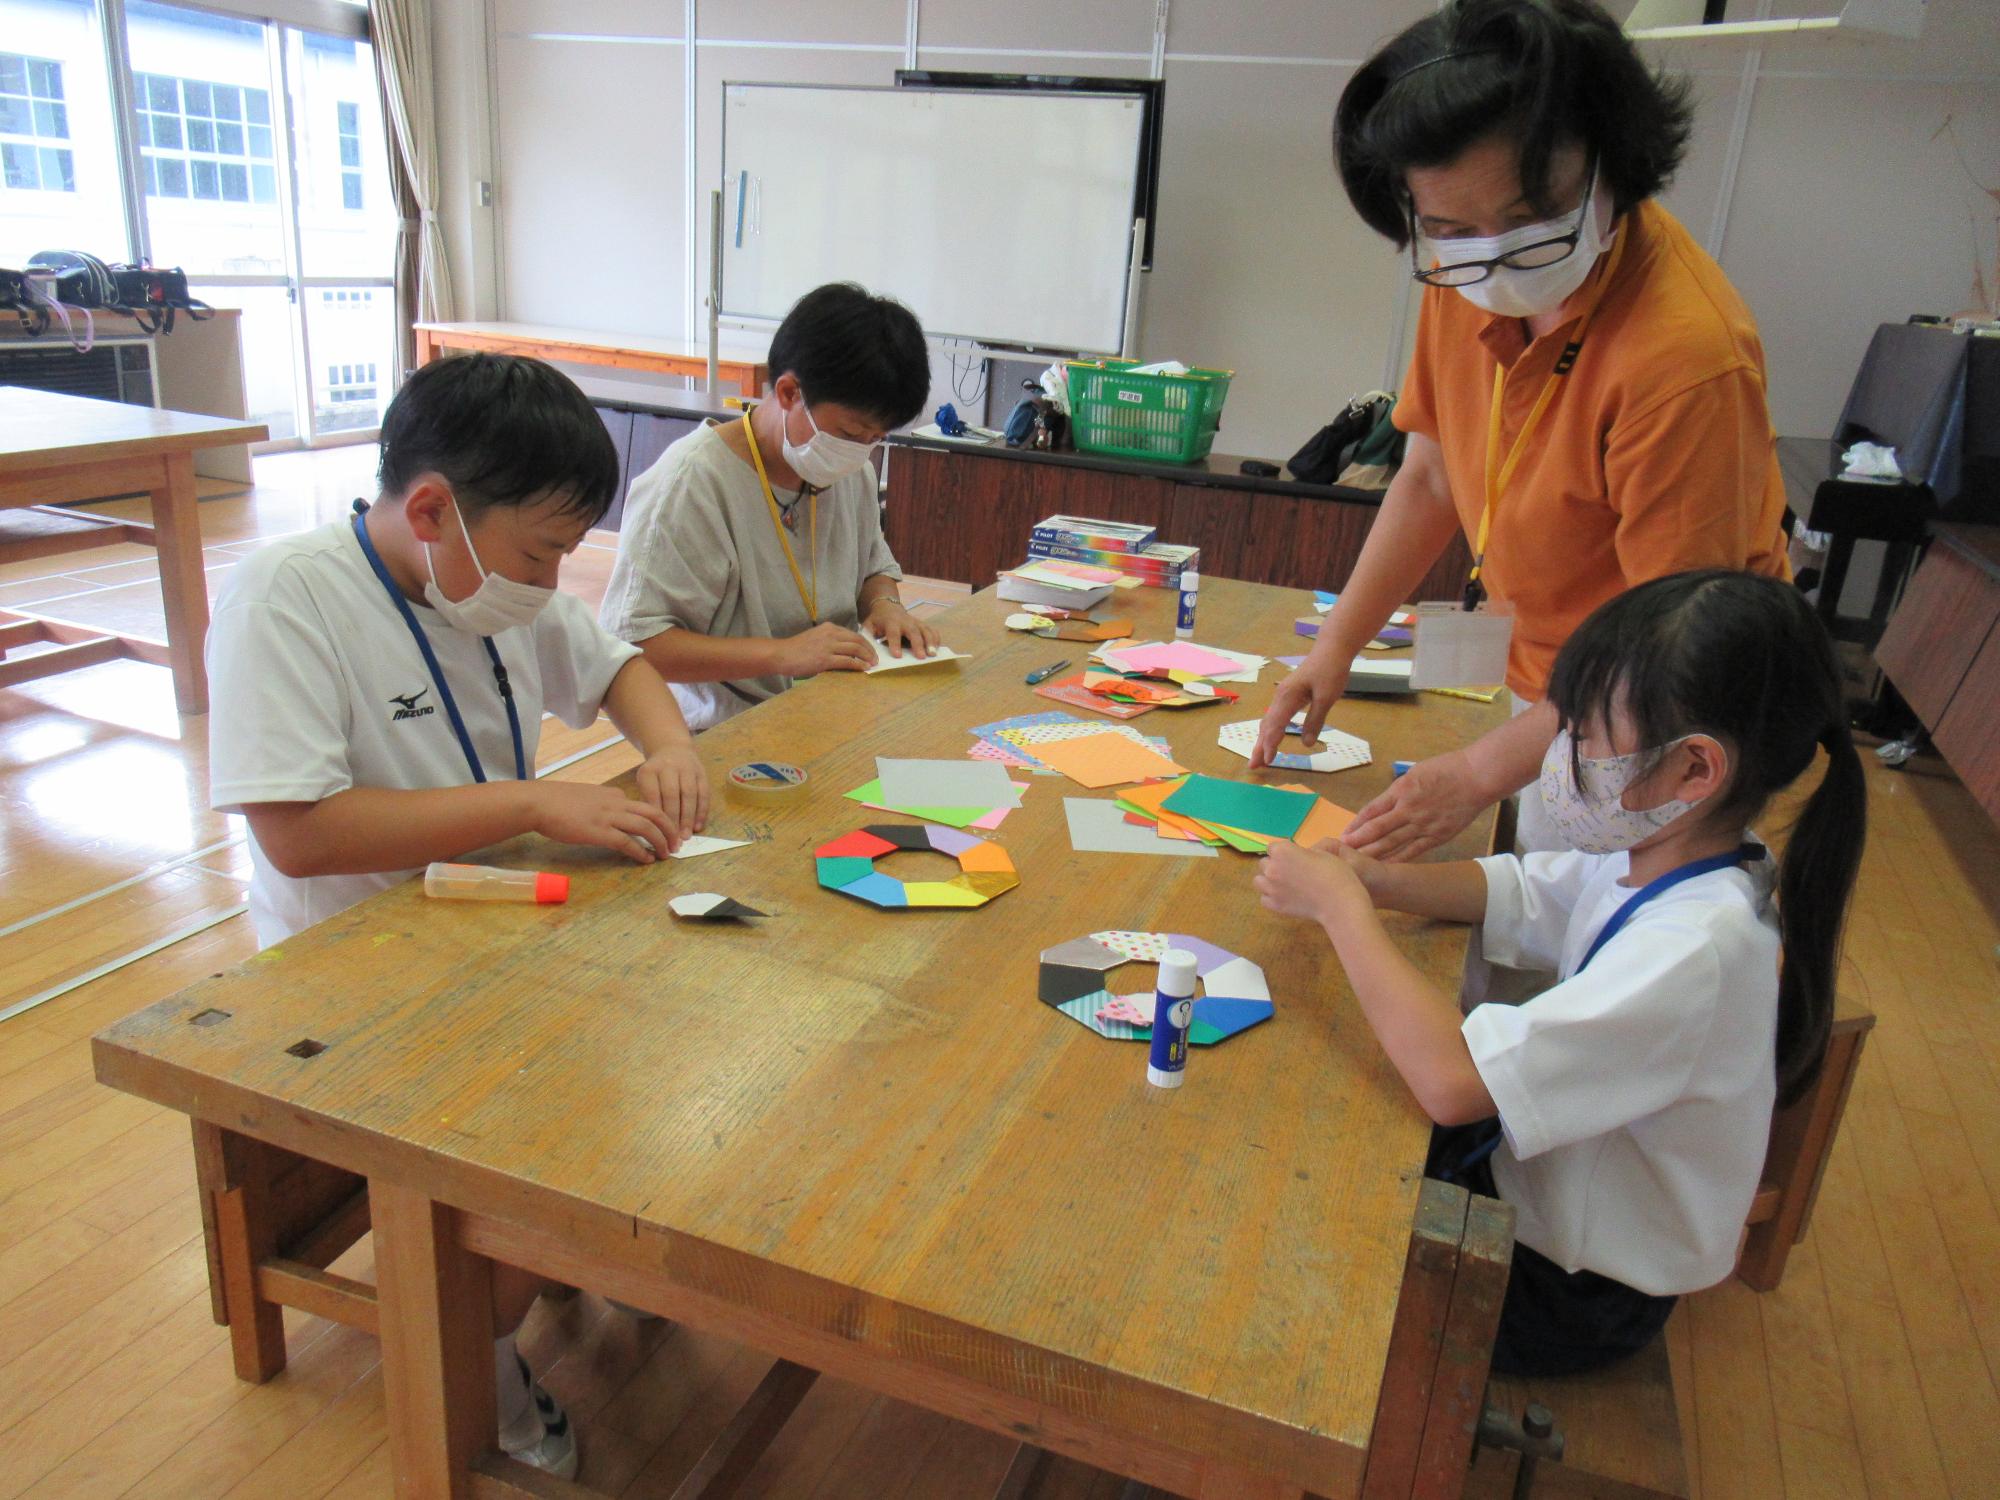 工作・仲間あそび教室で、楽しそうに折り紙工作をしている子ども達と指導者の写真